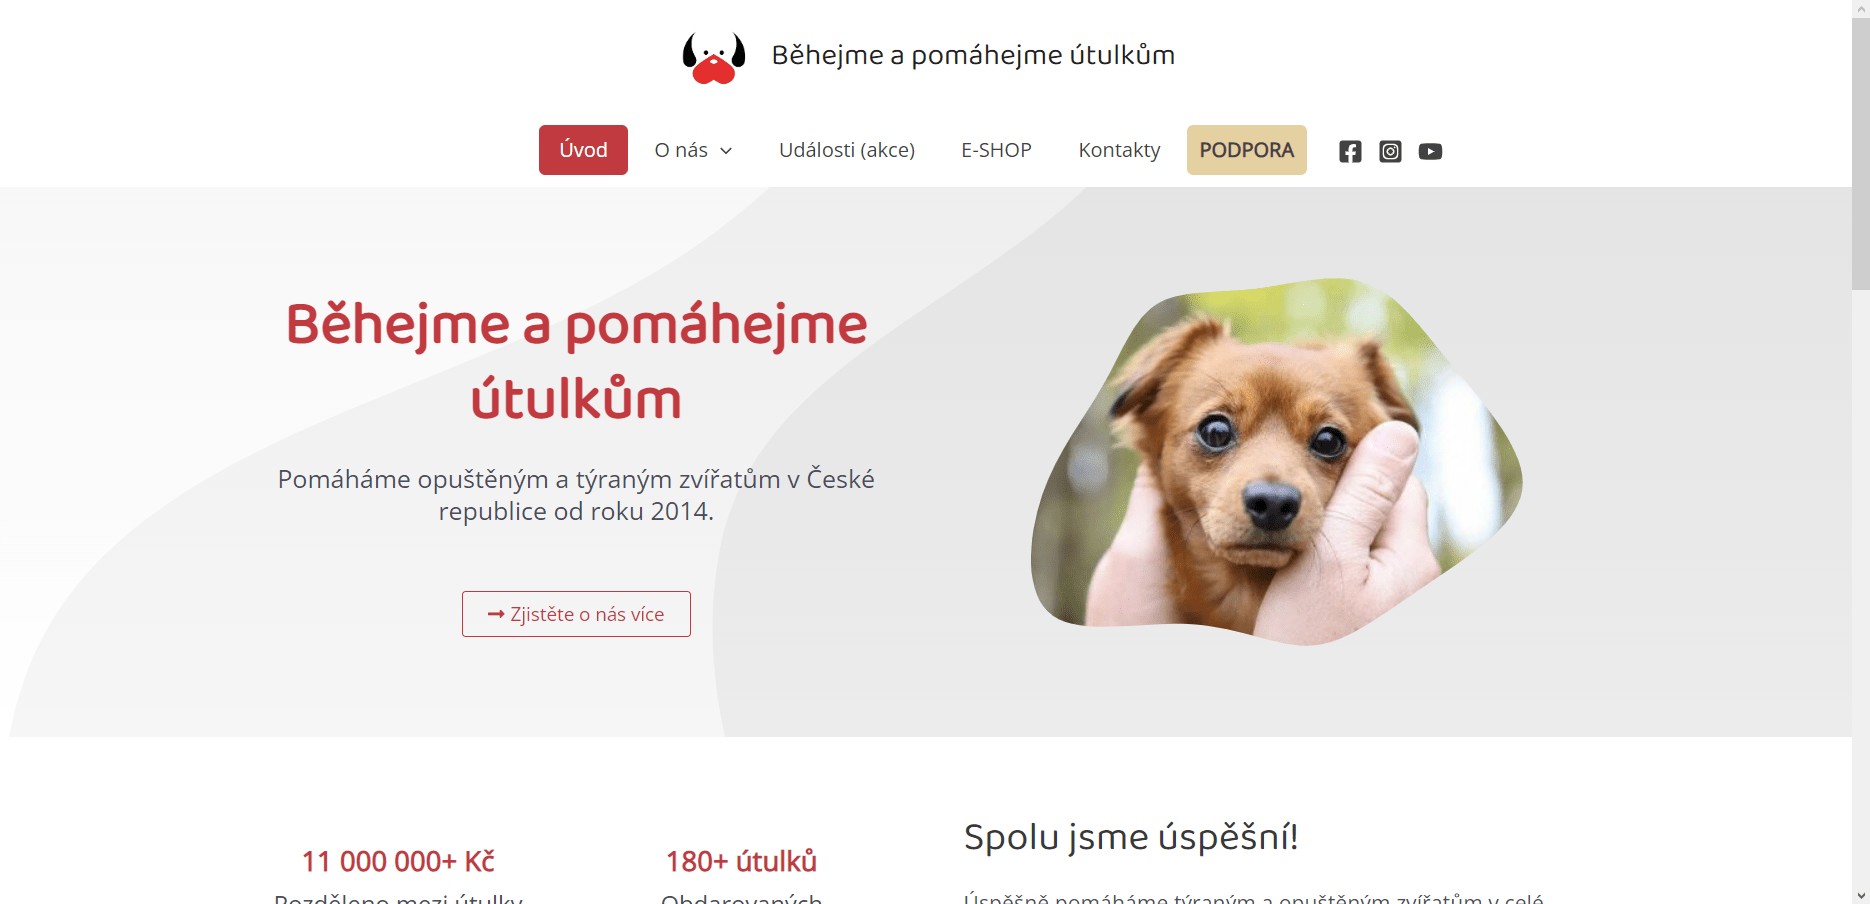 Snímek obrazovky www.behproutulky.cz